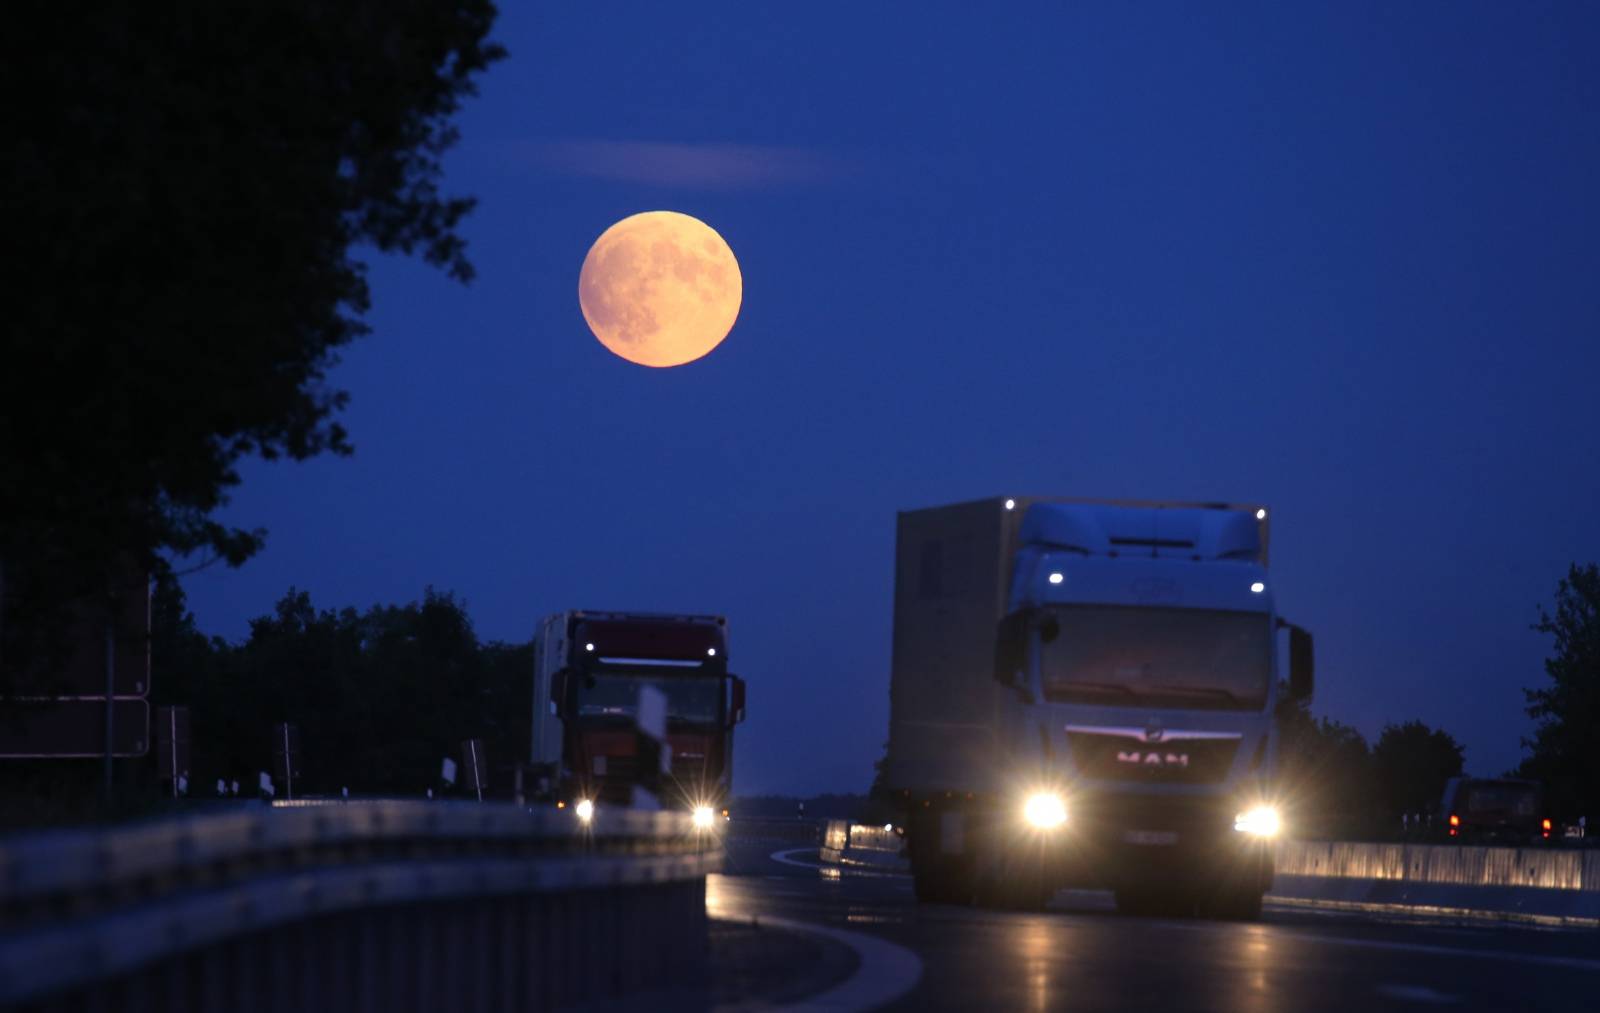 Full moon via motorway